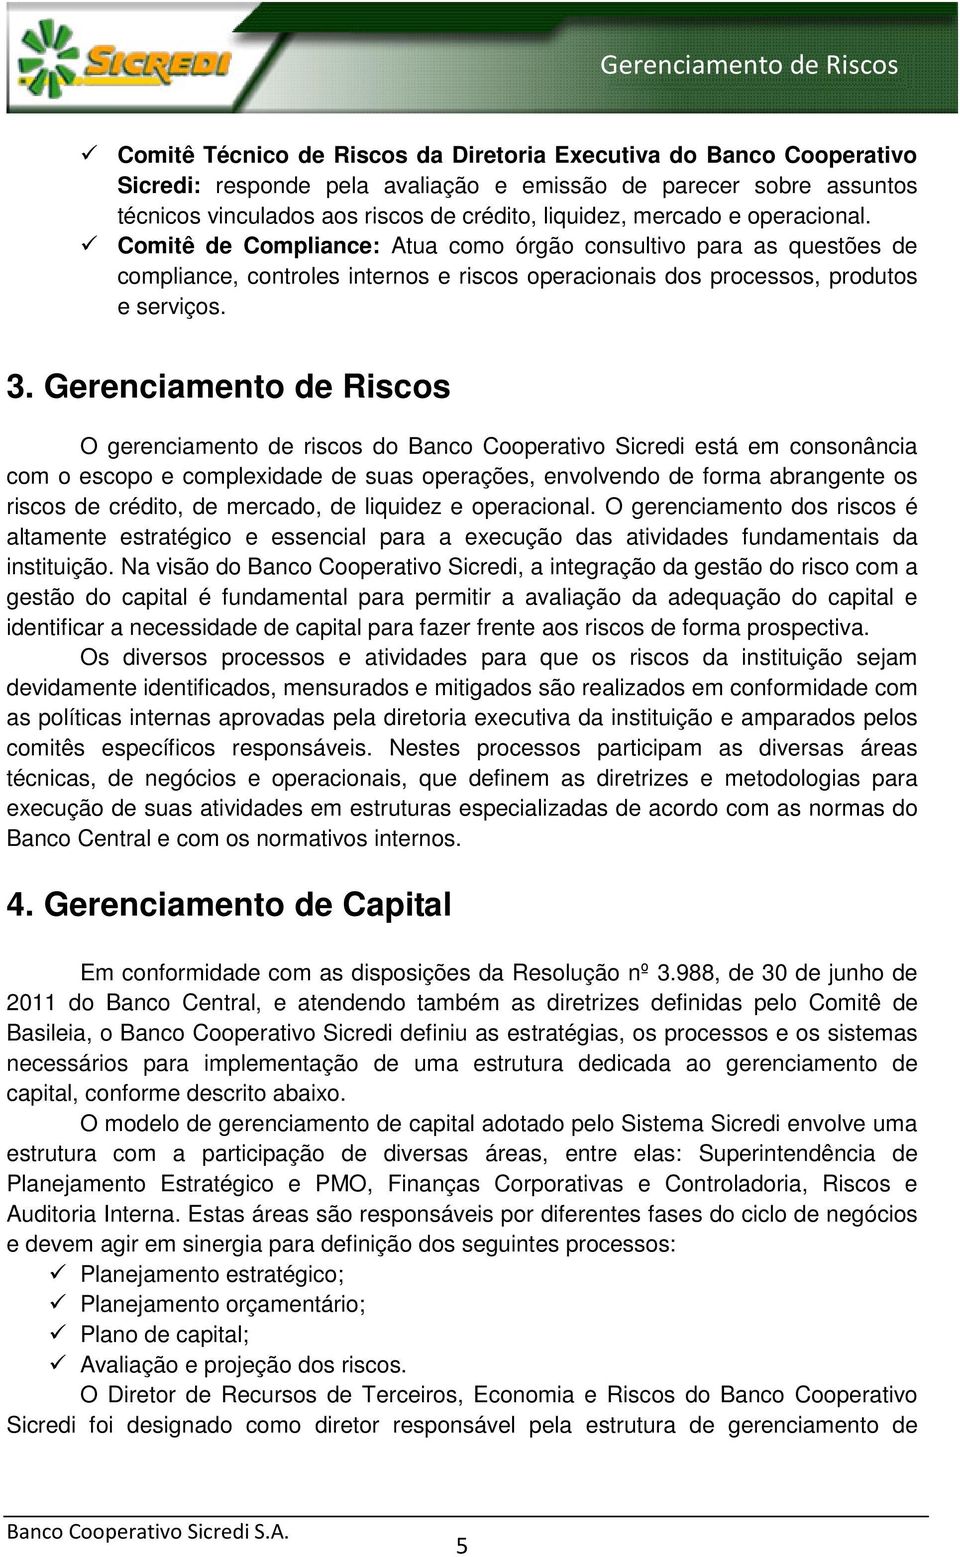 Gerenciamento de Riscos O gerenciamento de riscos do Banco Cooperativo Sicredi está em consonância com o escopo e complexidade de suas operações, envolvendo de forma abrangente os riscos de crédito,